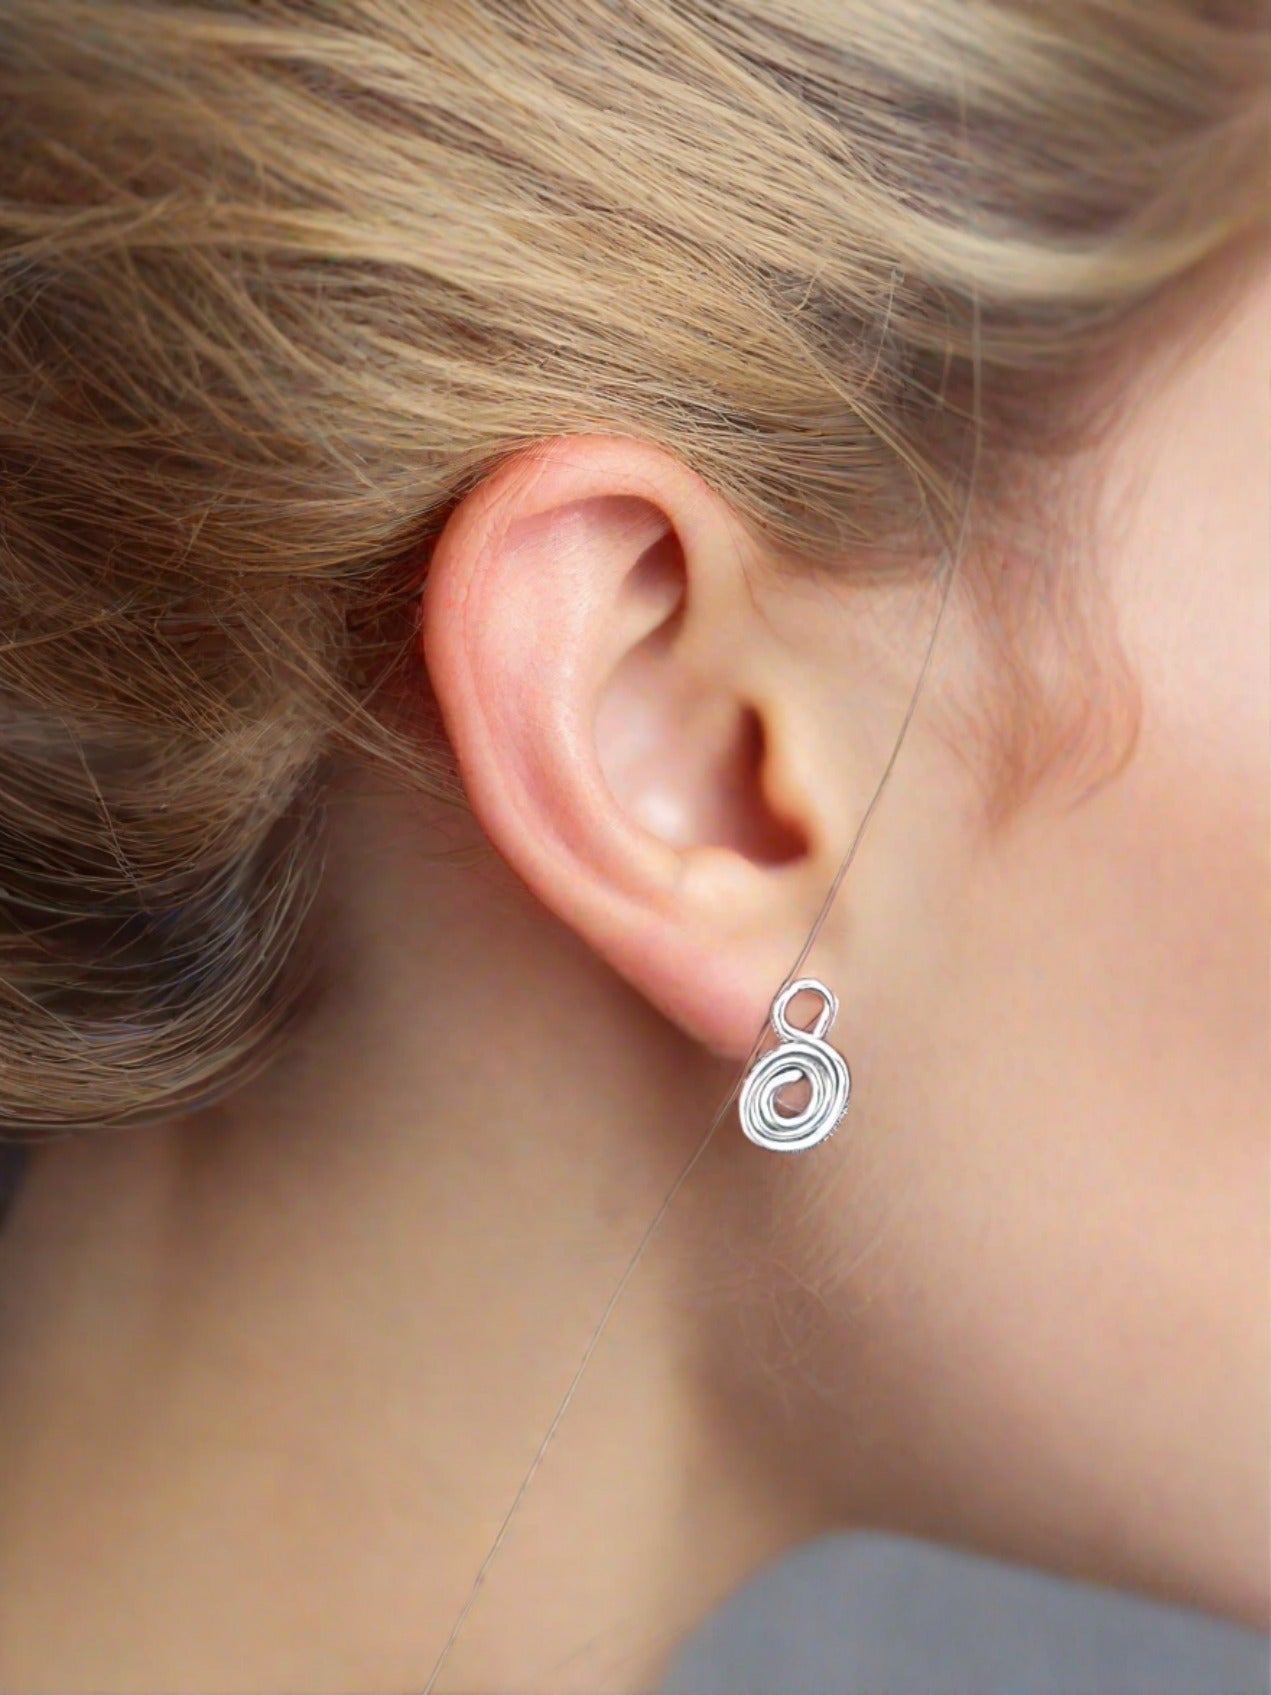 Gratitude Symbol Earrings - Lightweight & Meaningful Jewelry for every day wear - Jaclyn Nicole